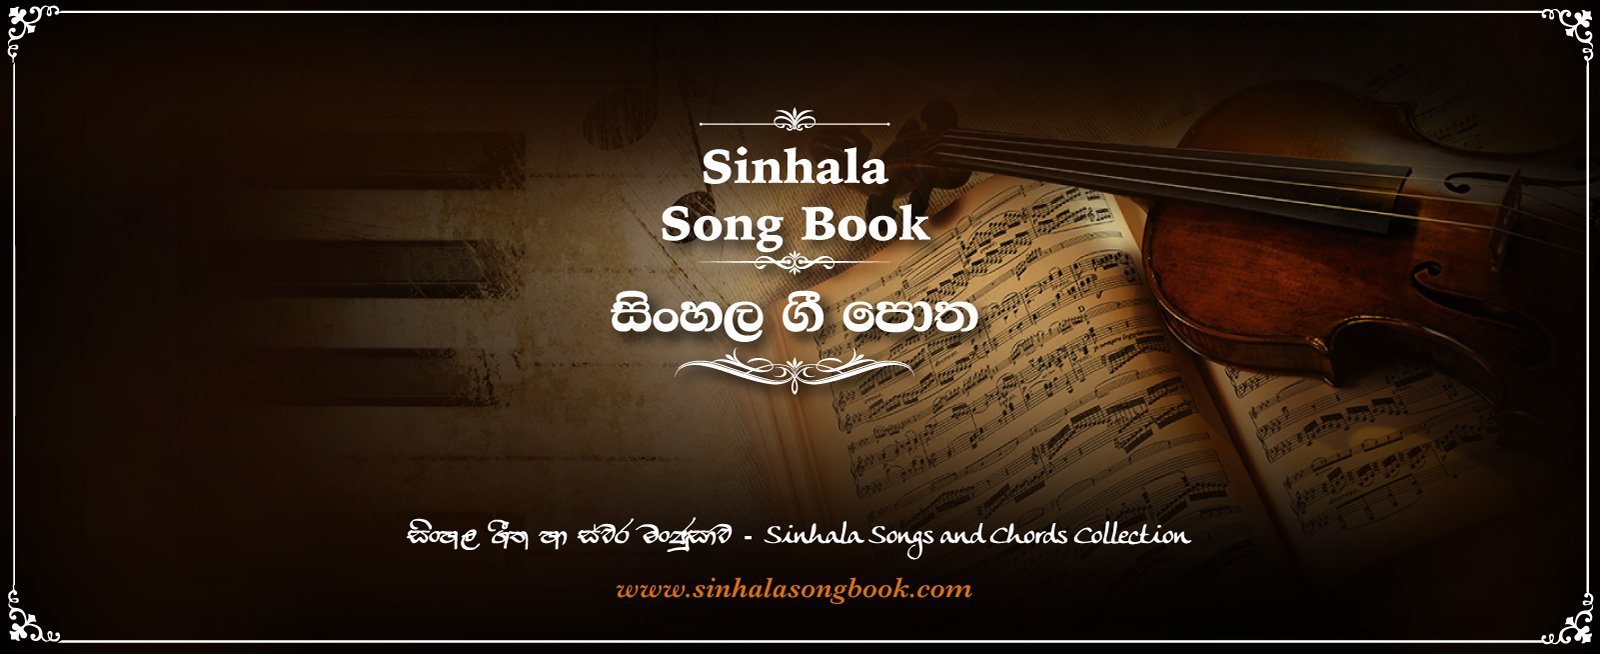 sinhala song chords, sinhala song lyrics, sinhala songs, sinhala mp3 | www.sinhalasongbook.com